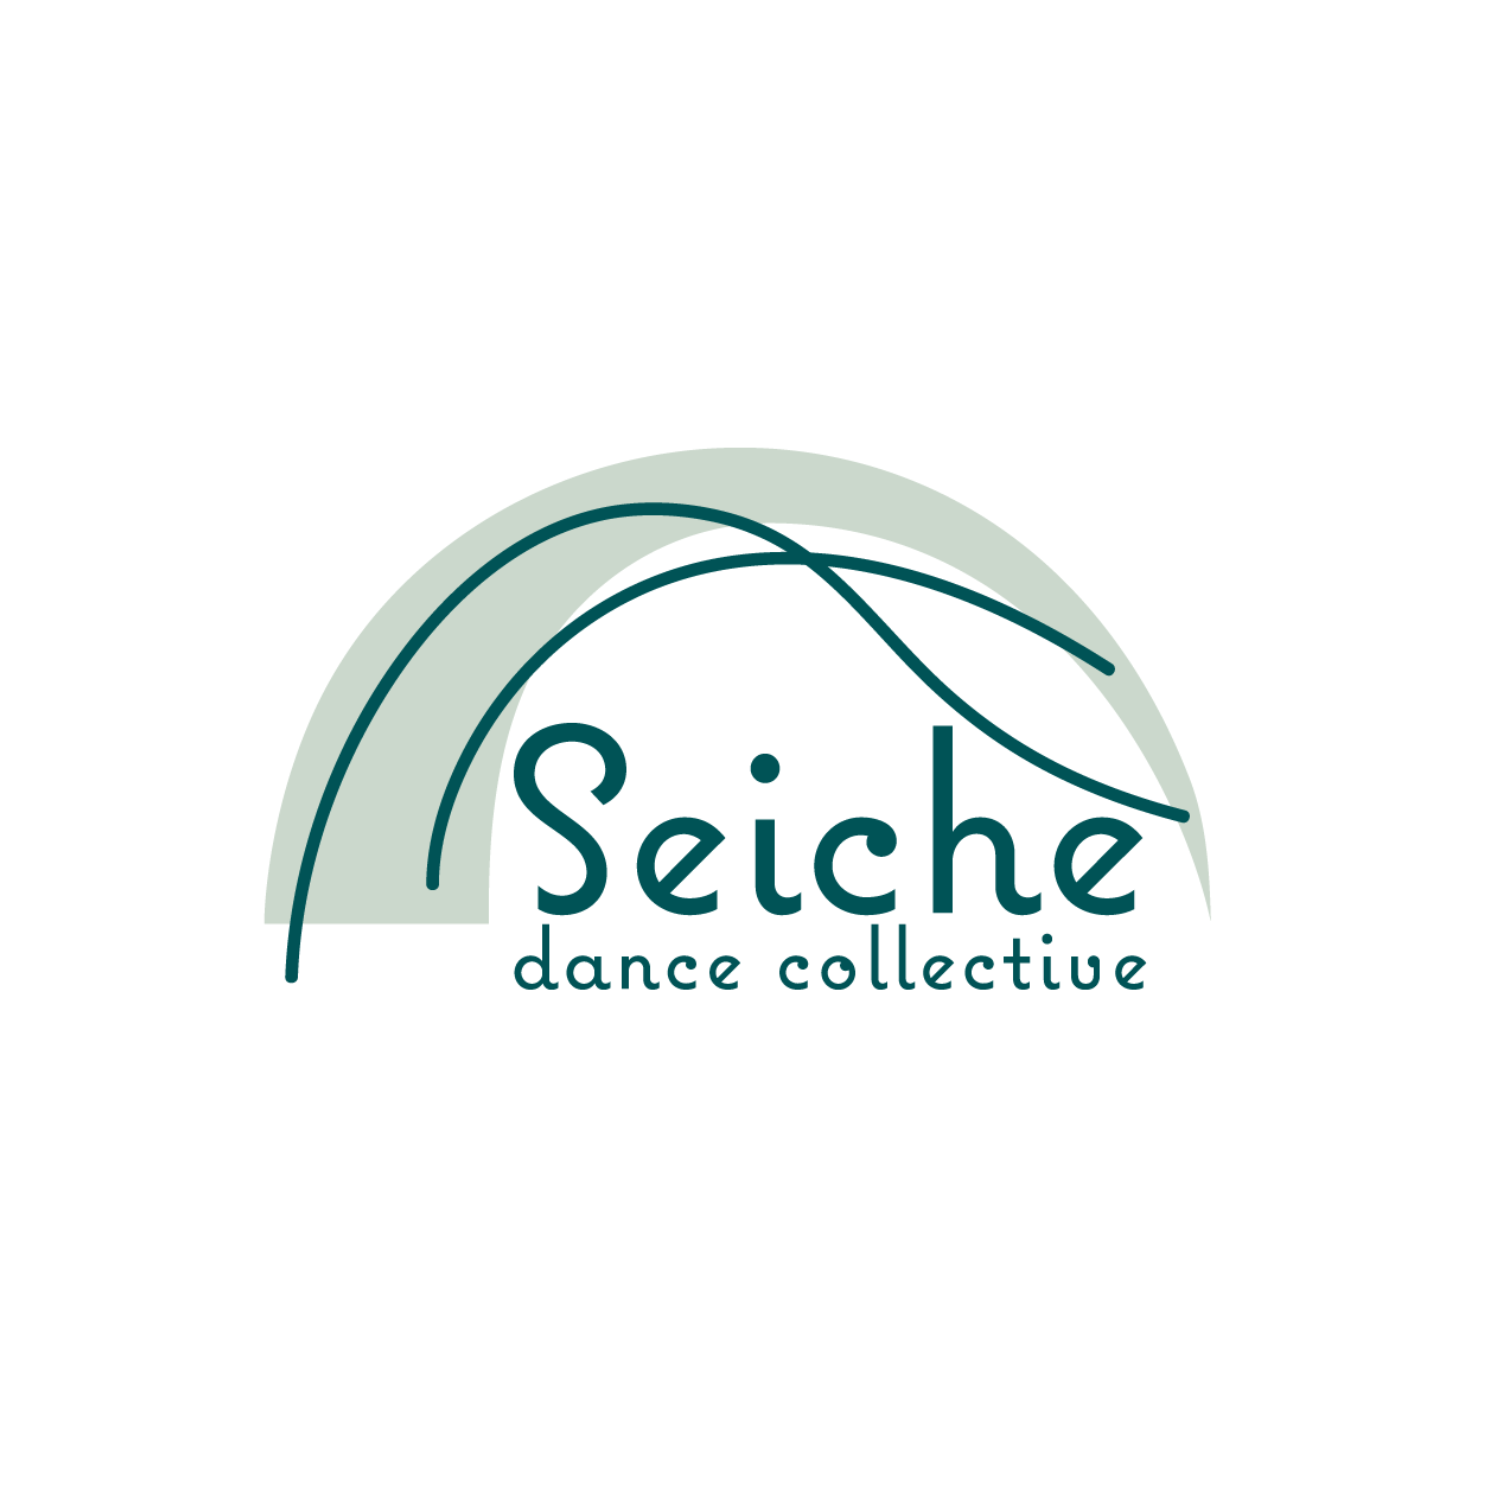 Community Class: Movement - Seiche Dance Collective